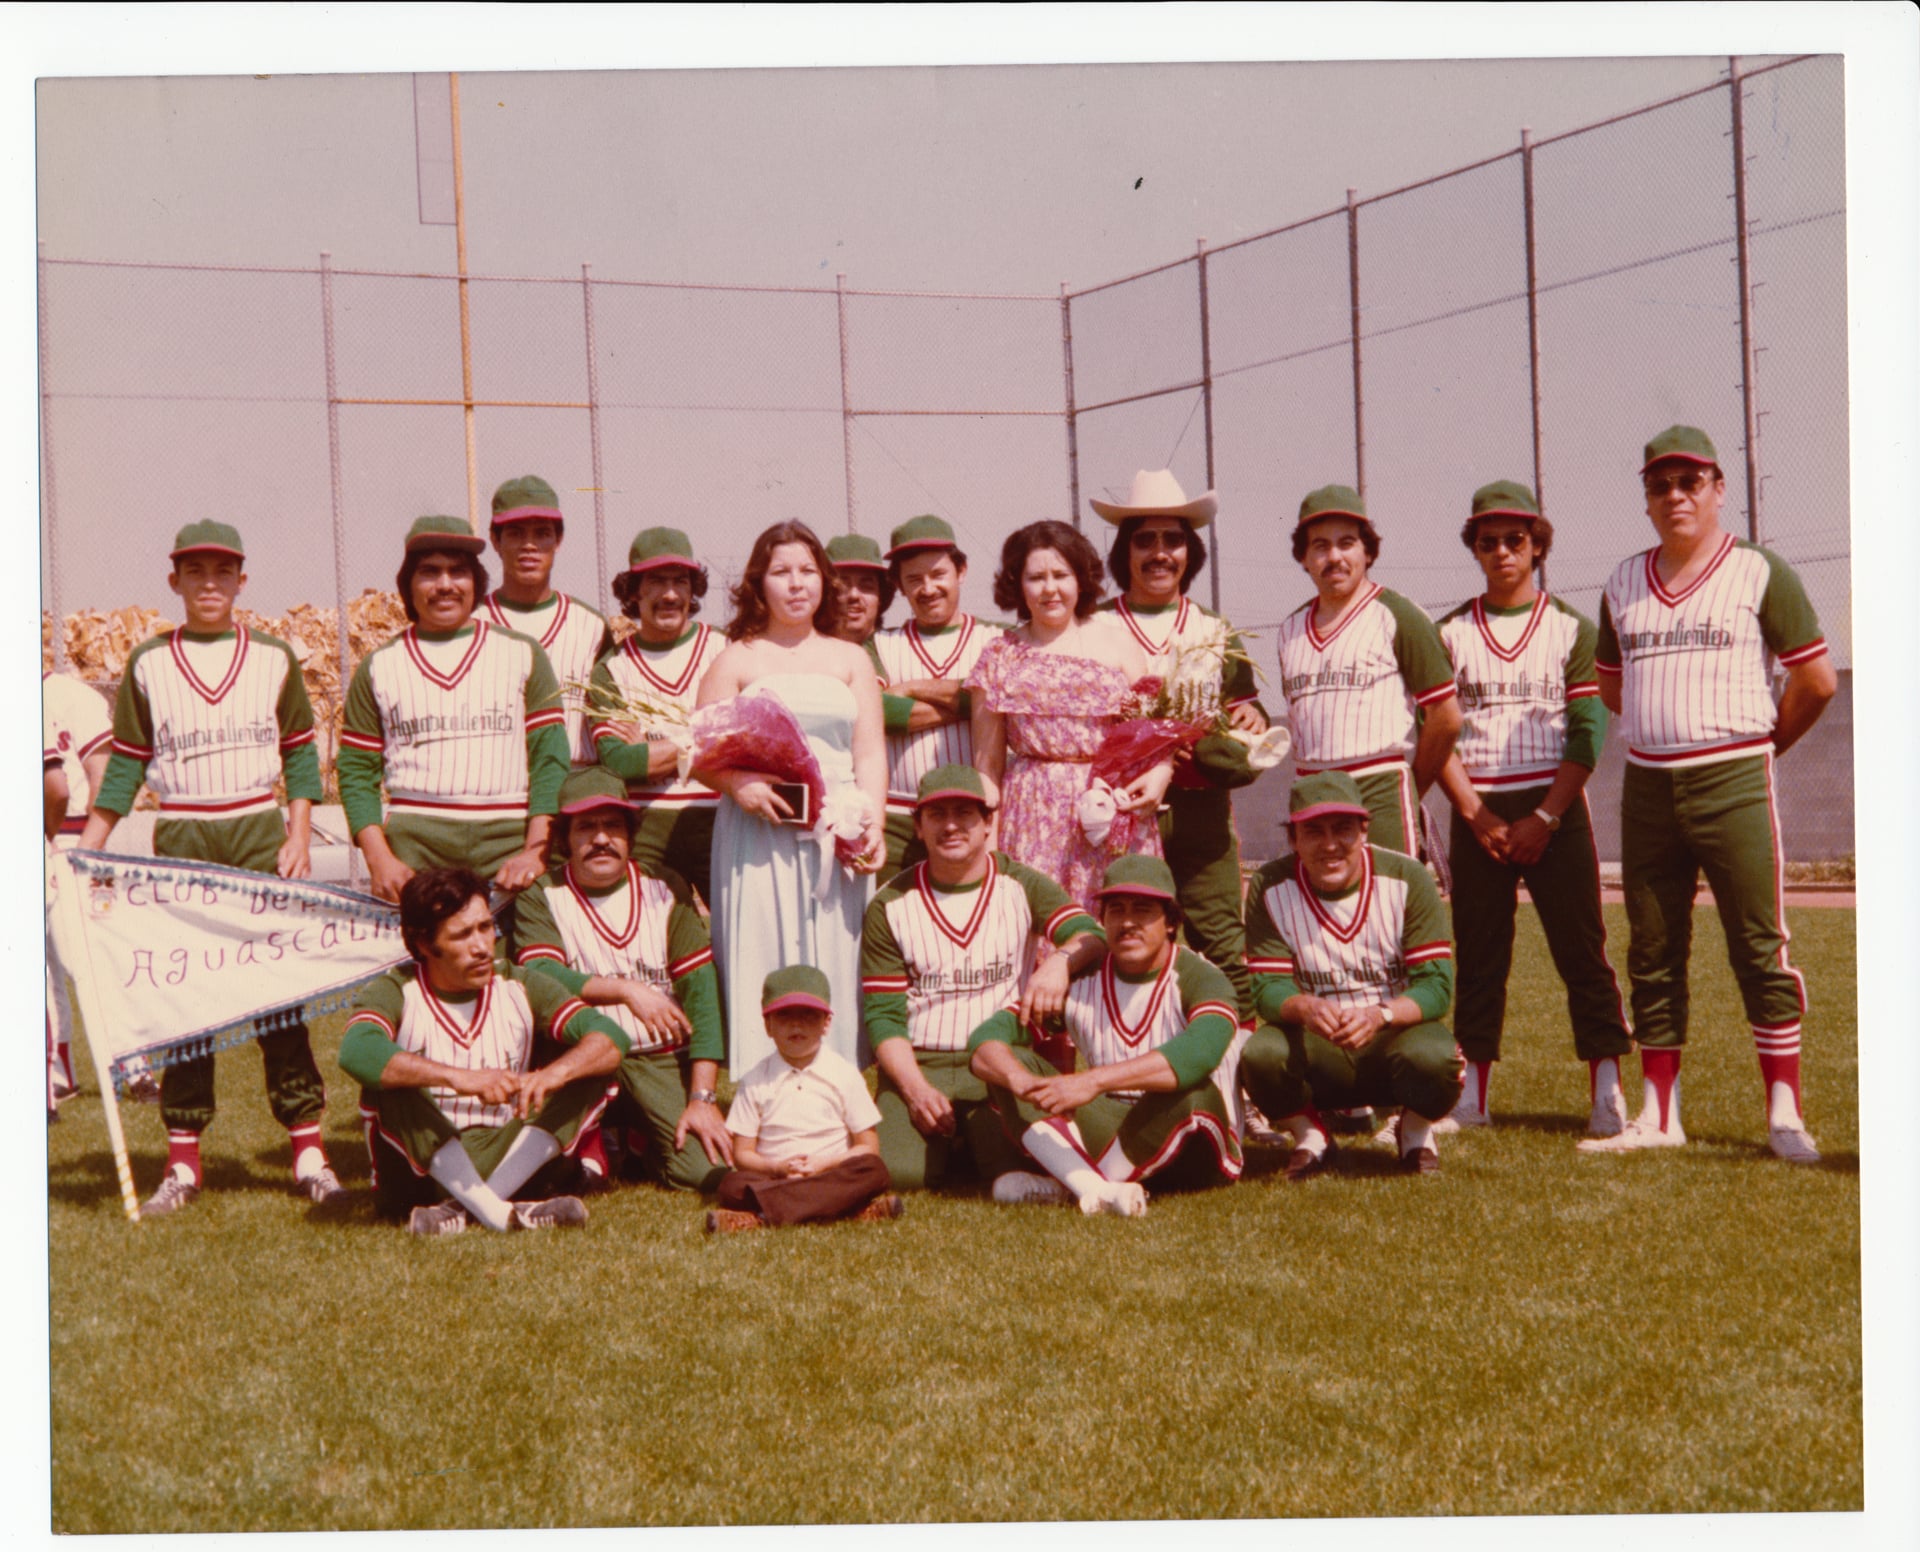 Hurtado Family -- Queen Carol Baseball